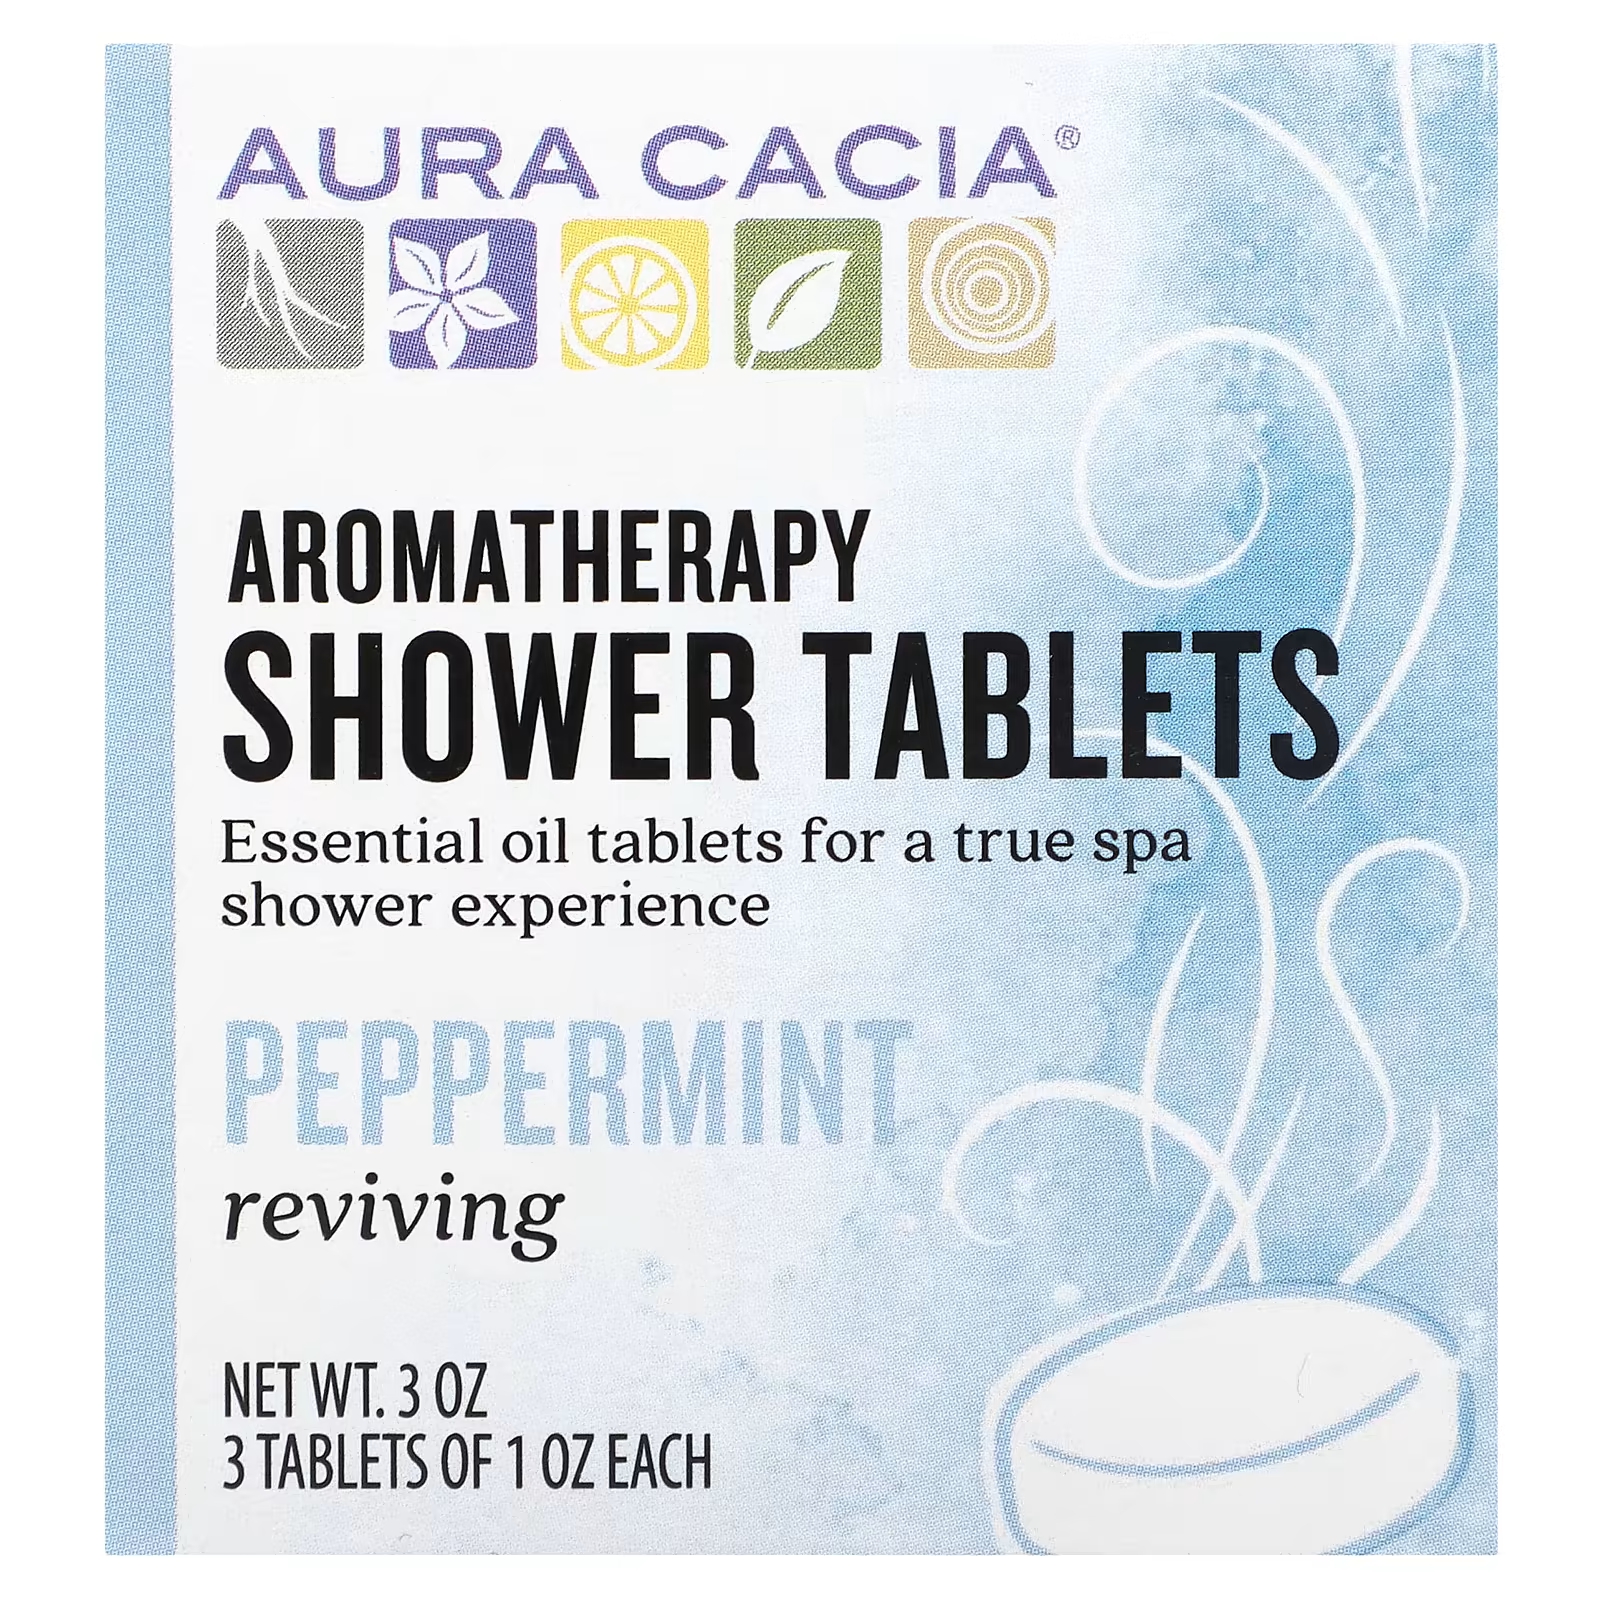 Таблетки для душа Aura Cacia с ароматерапией, 3 таблетки мыло ручной работы с эфирным маслом 360 г увлажняющее мыло с солью для ванны бомбочки для душа очиститель для тела с шариками спа